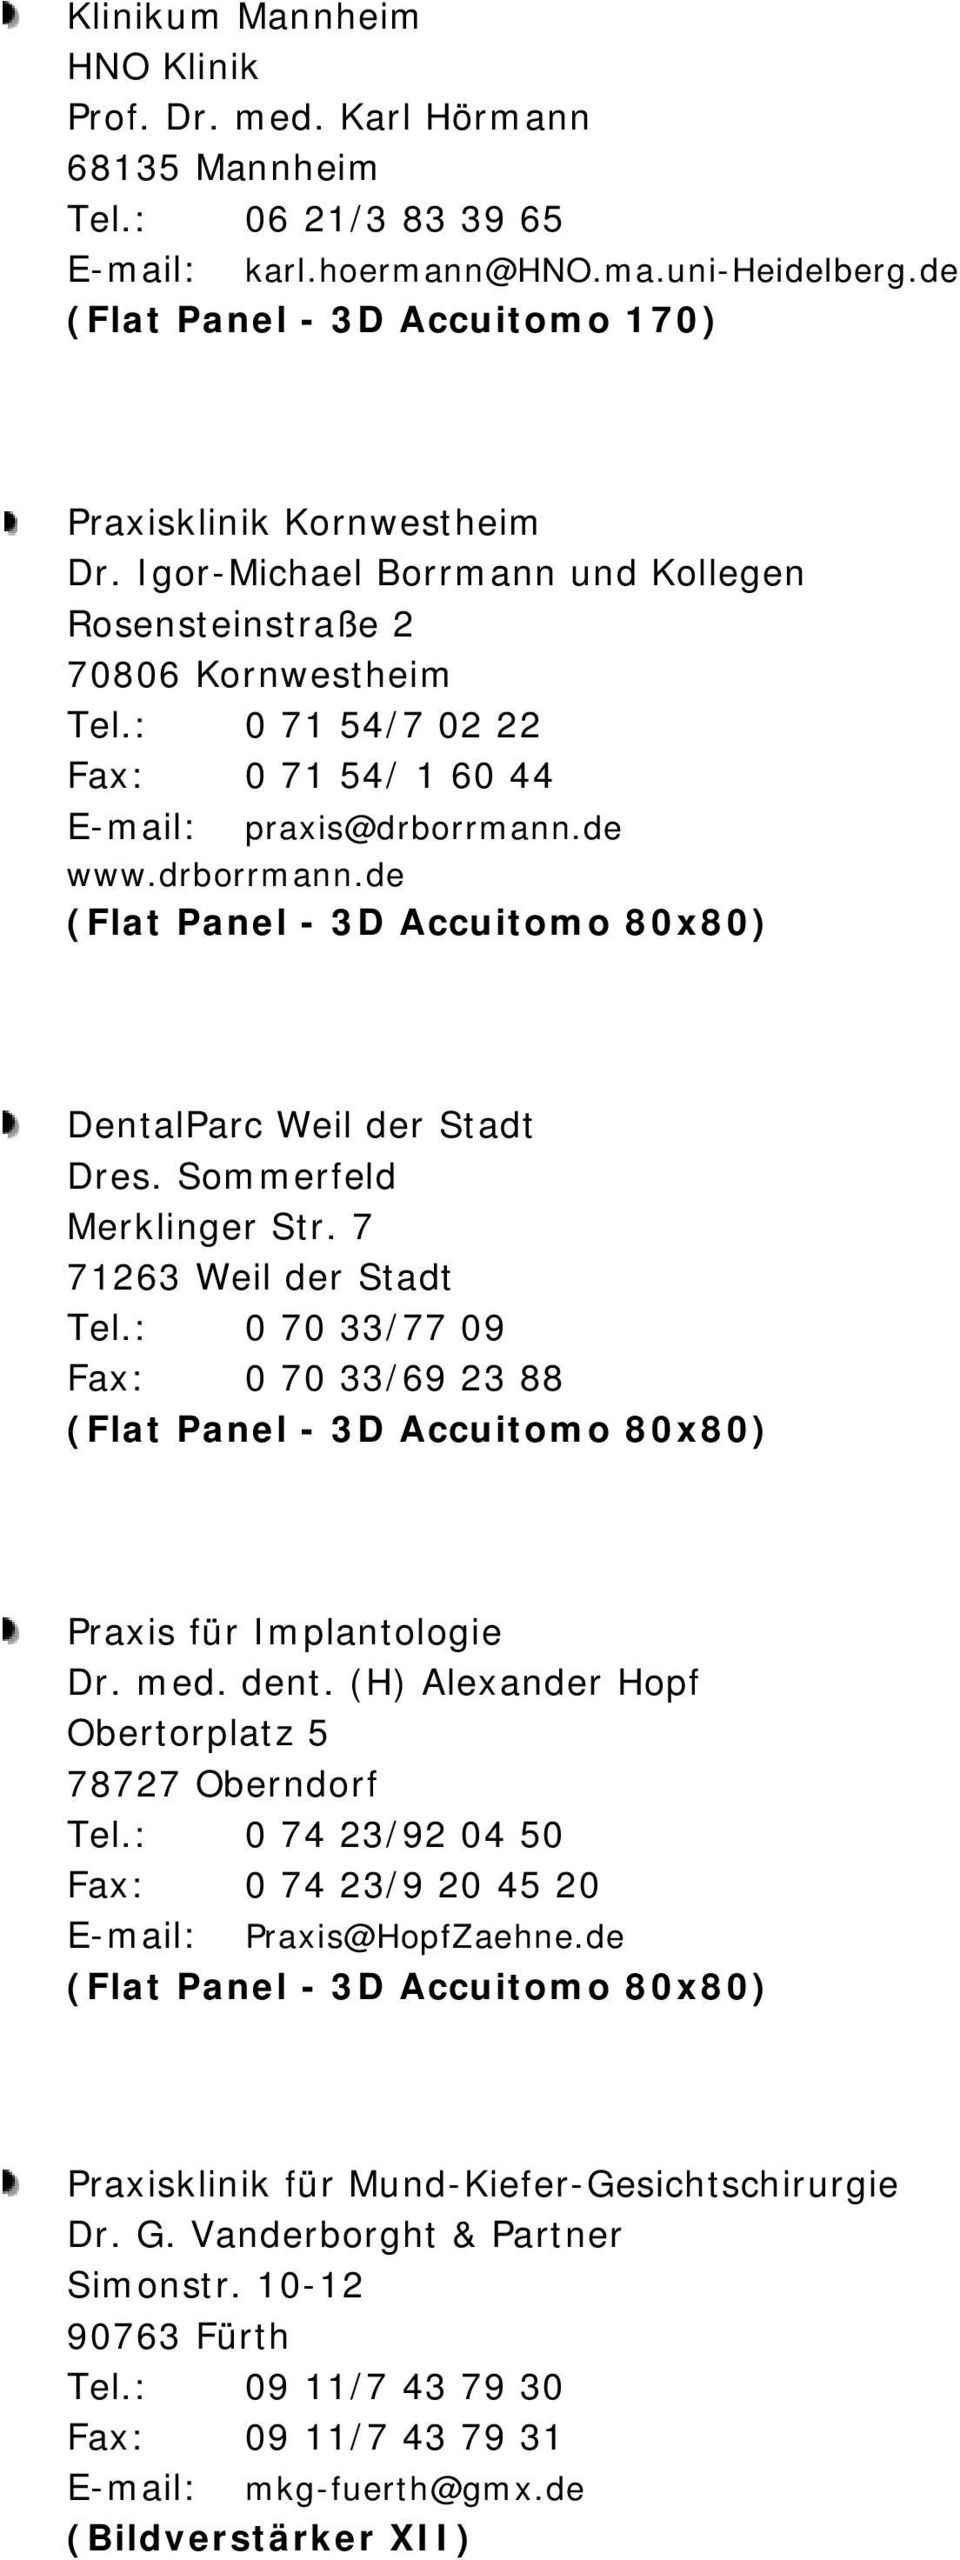 : 0 71 54/7 02 22 Fax: 0 71 54/ 1 60 44 E-mail: praxis@drborrmann.de www.drborrmann.de DentalParc Weil der Stadt Dres. Sommerfeld Merklinger Str. 7 71263 Weil der Stadt Tel.